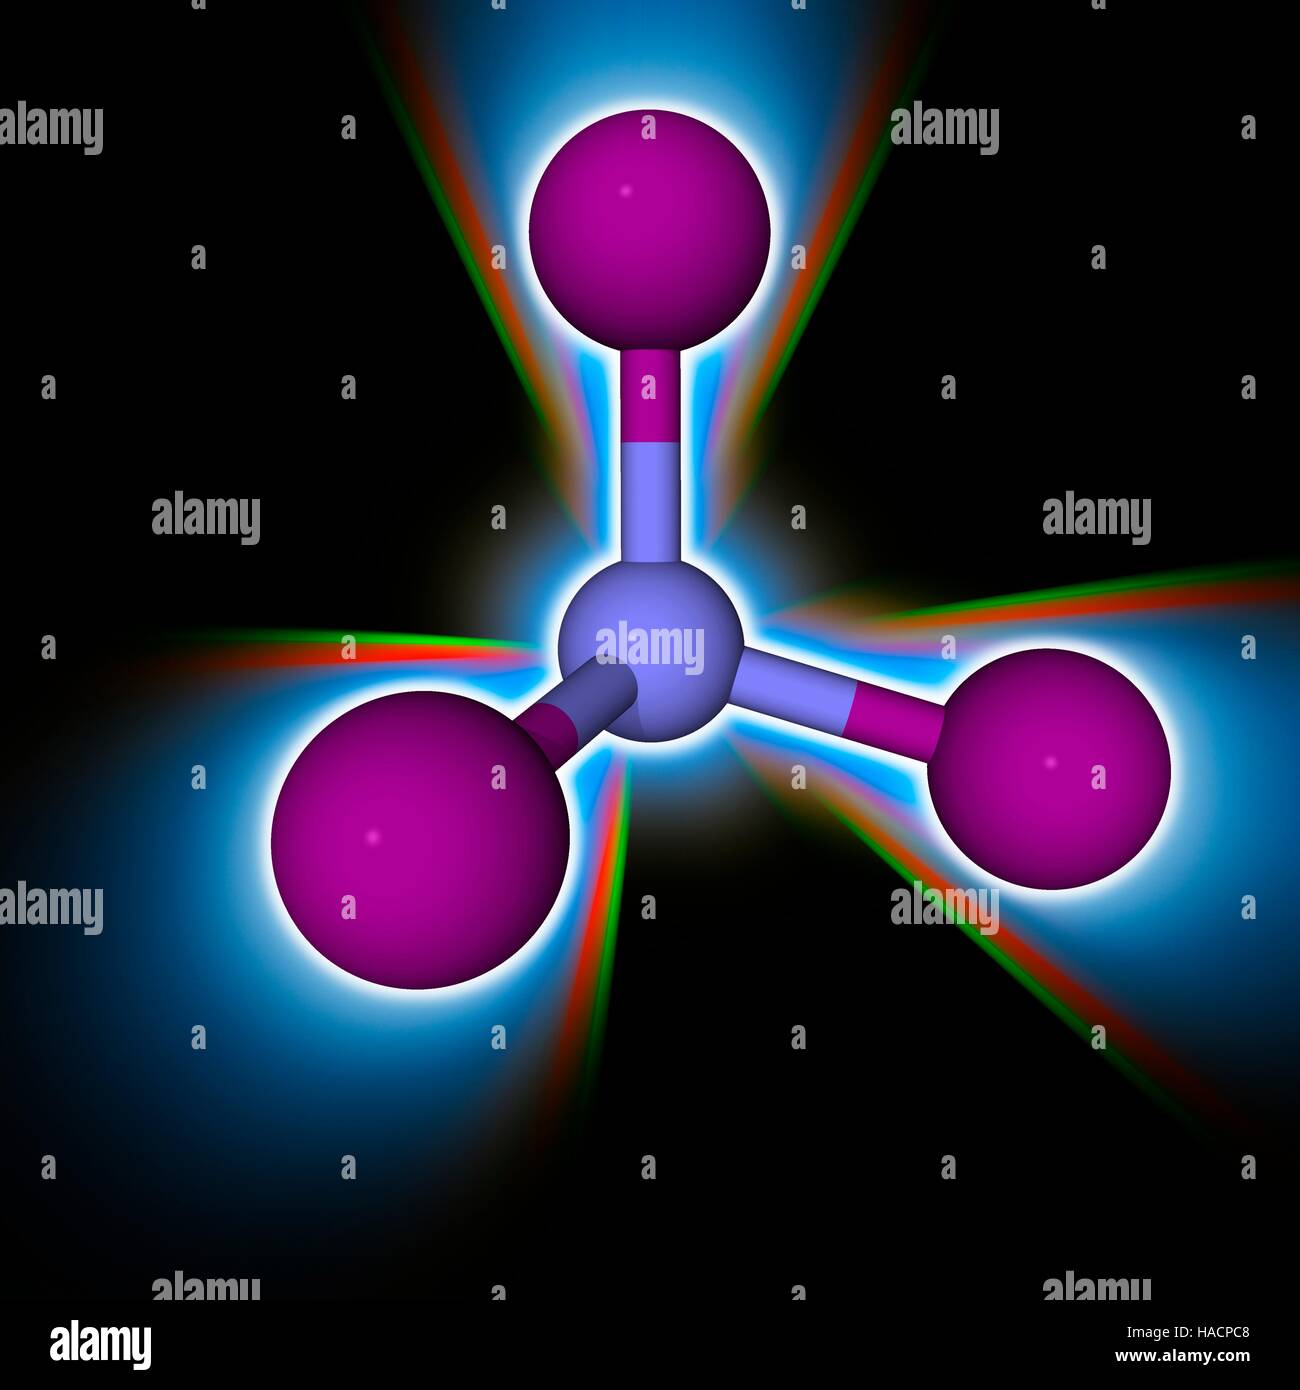 Stickstoff Triiodide. Molekulares Modell des explosiven chemischen Stickstoff Triiodide (N.I3). Dieser Sprengstoff ist extrem empfindlich gegenüber Erschütterungen. Atome als Kugeln dargestellt werden und sind farblich gekennzeichnet: Stickstoff (blau) und Jod (violett). Abbildung. Stockfoto